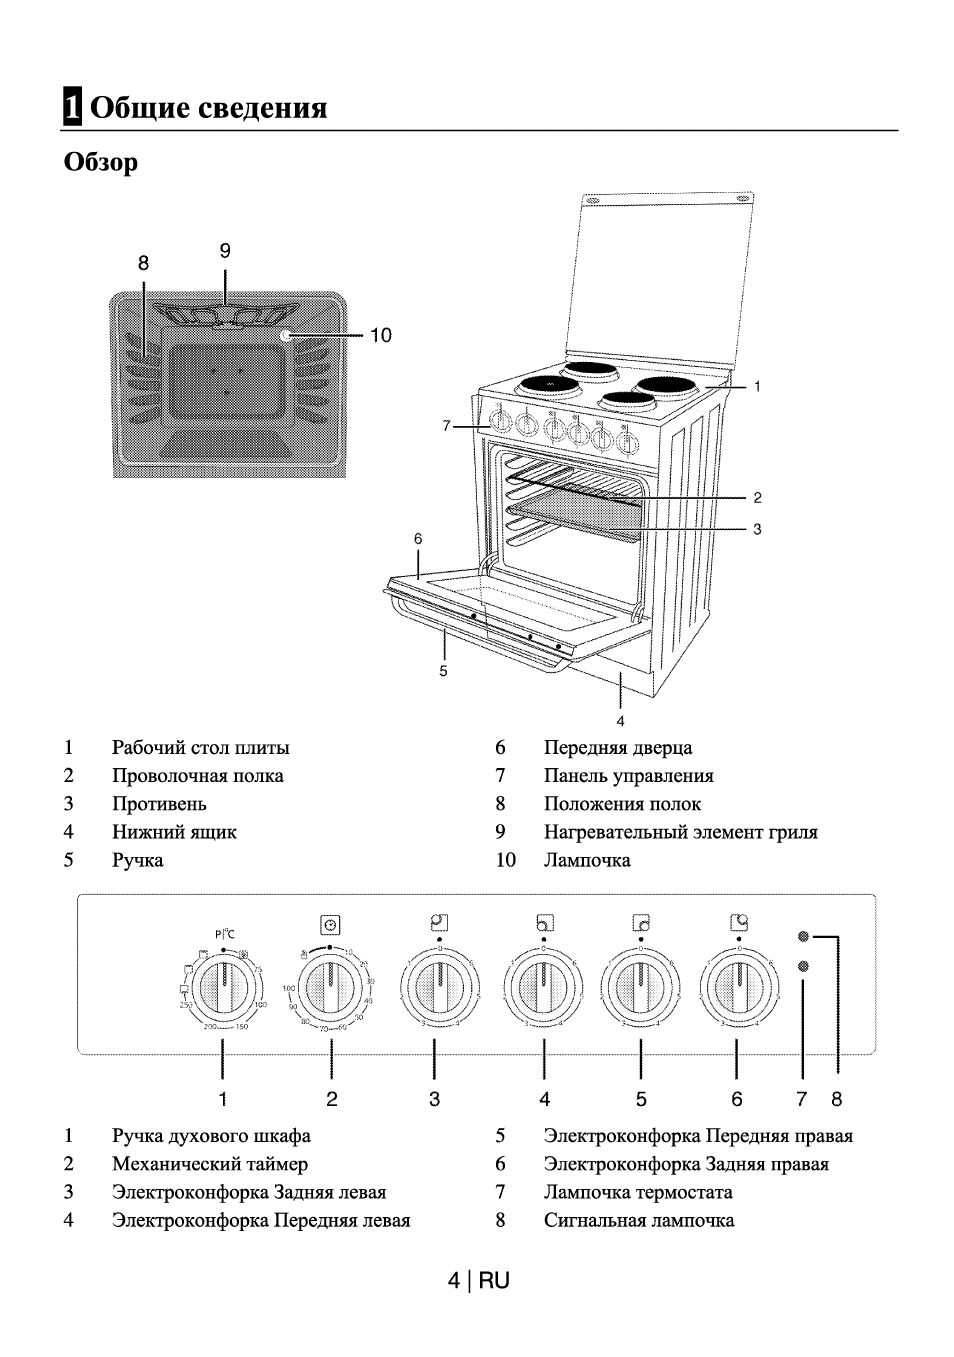 Как пользоваться индукционной варочной панелью — инструкция | блог miele.ru